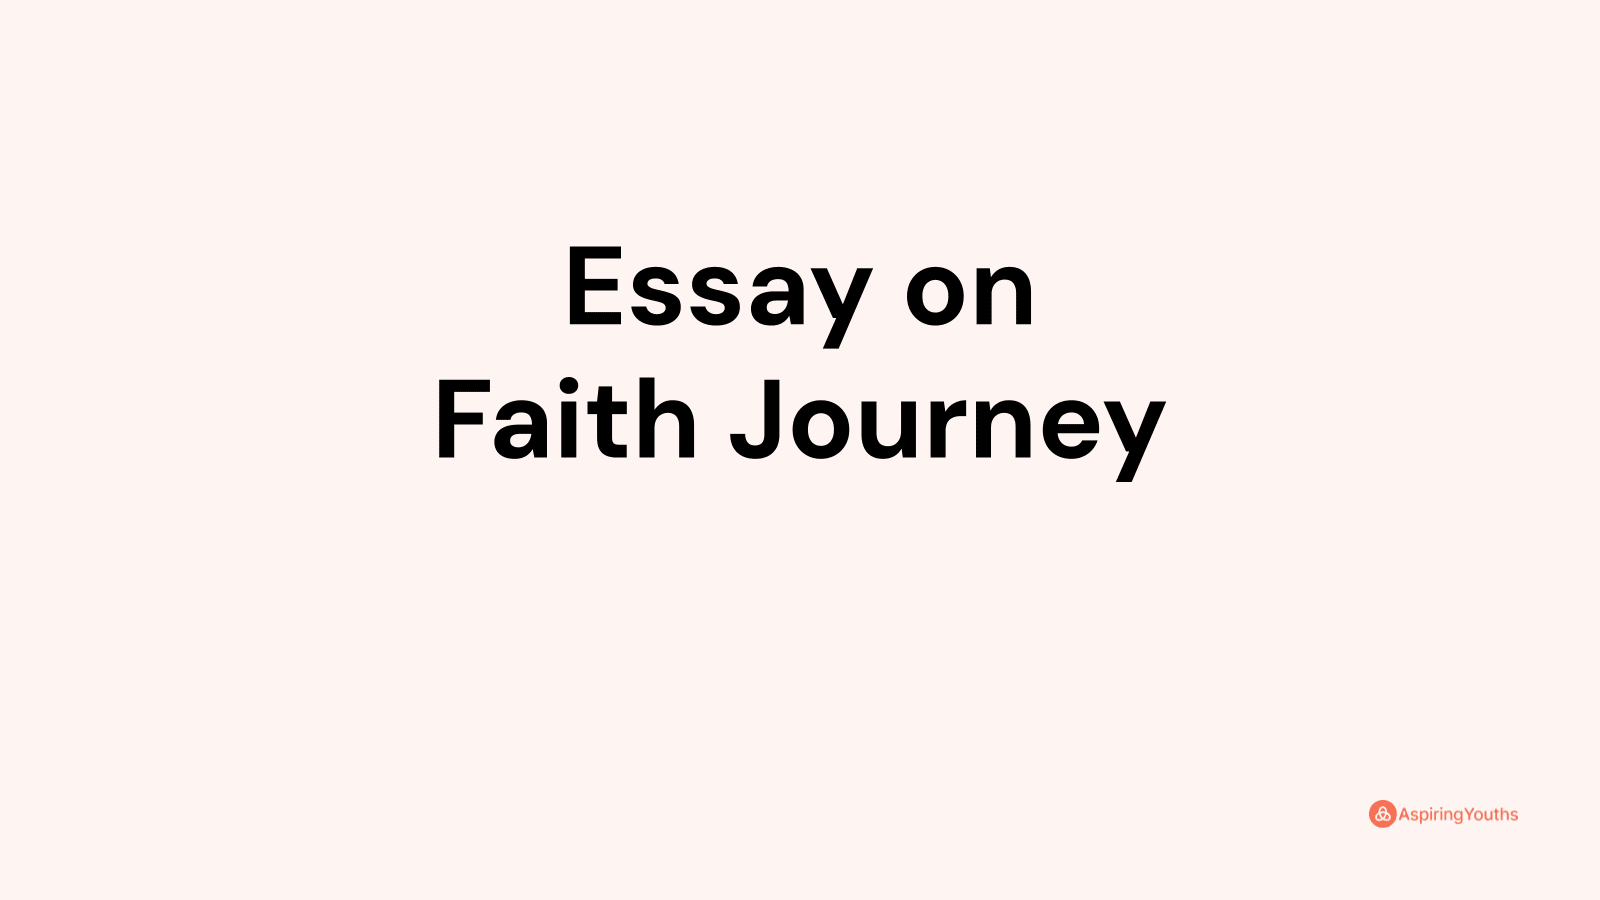 Essay on Faith Journey